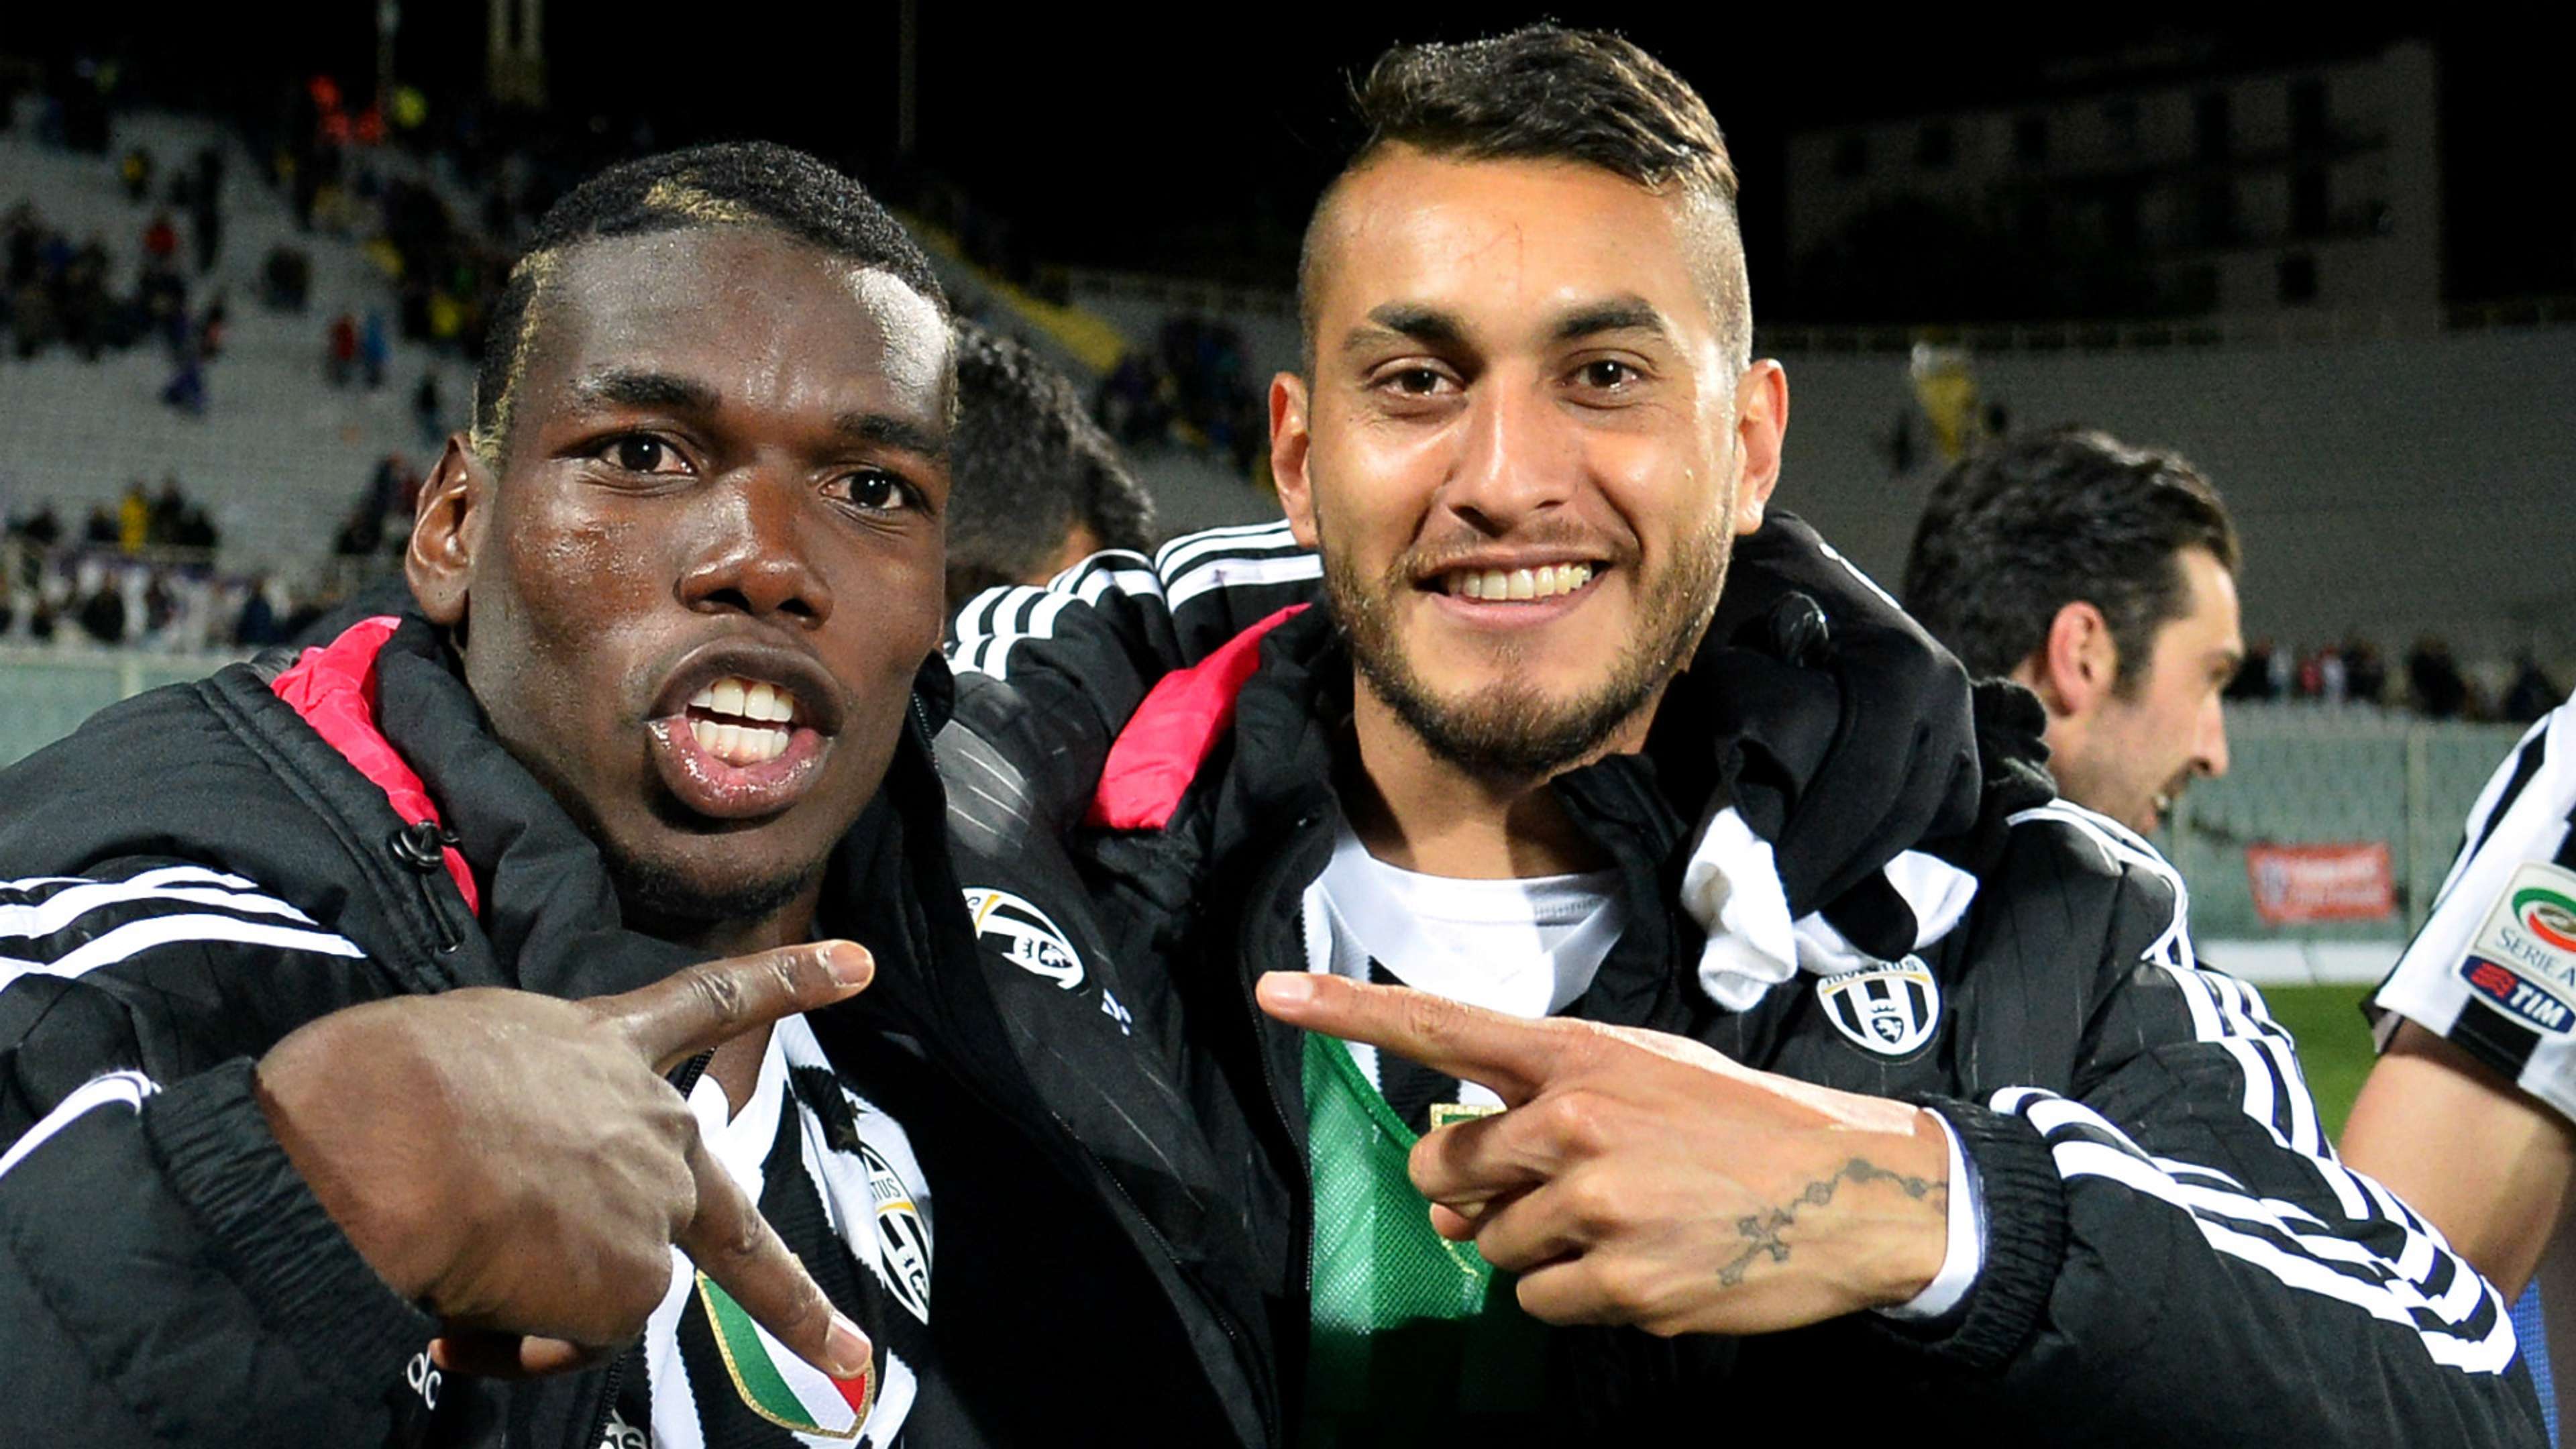 Paul Pogba and Roberto Pereyra, Juventus, 2015